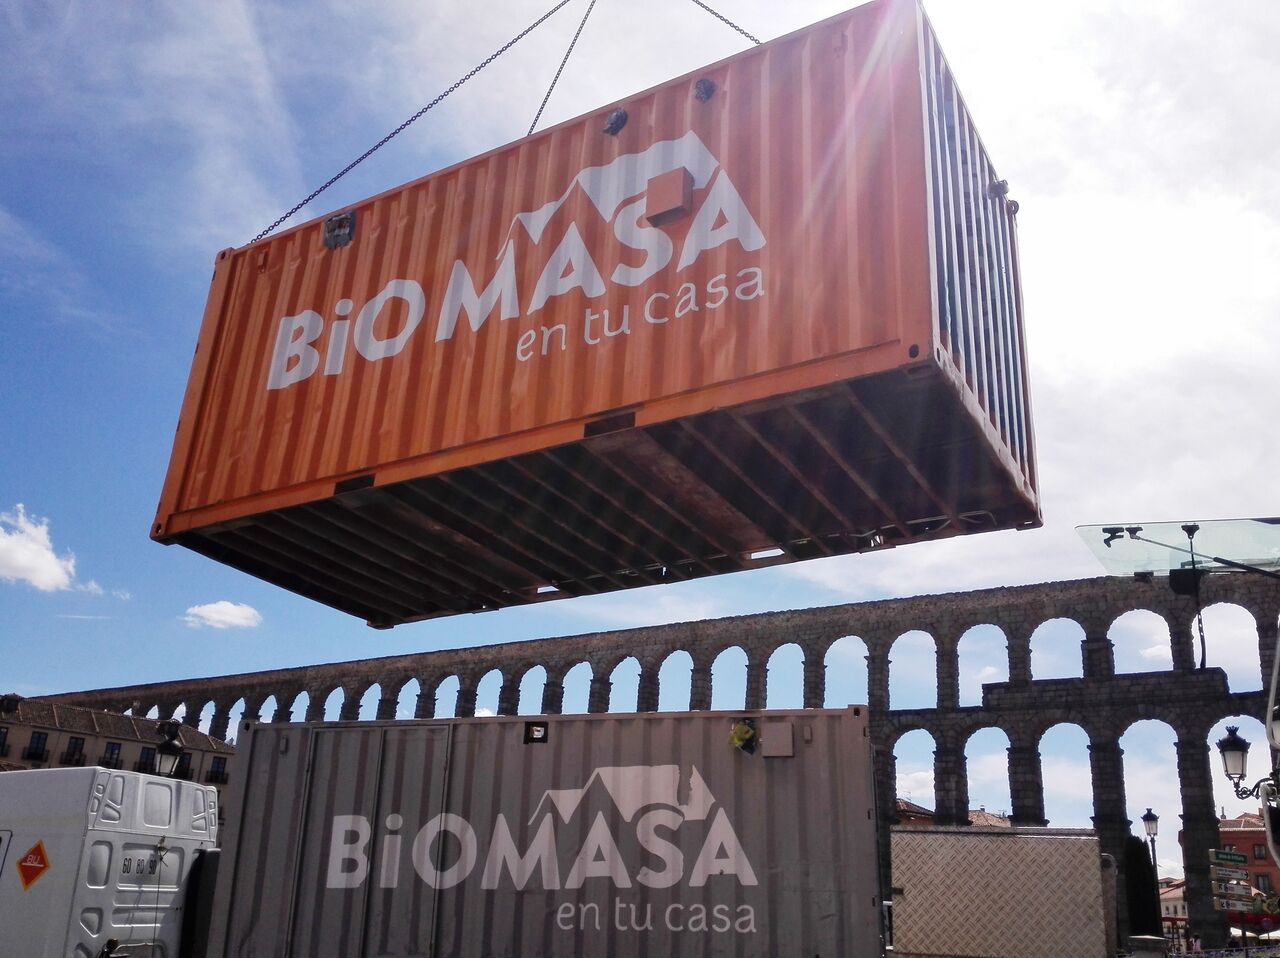 Biomasa_en_tu_casa._Acueducto